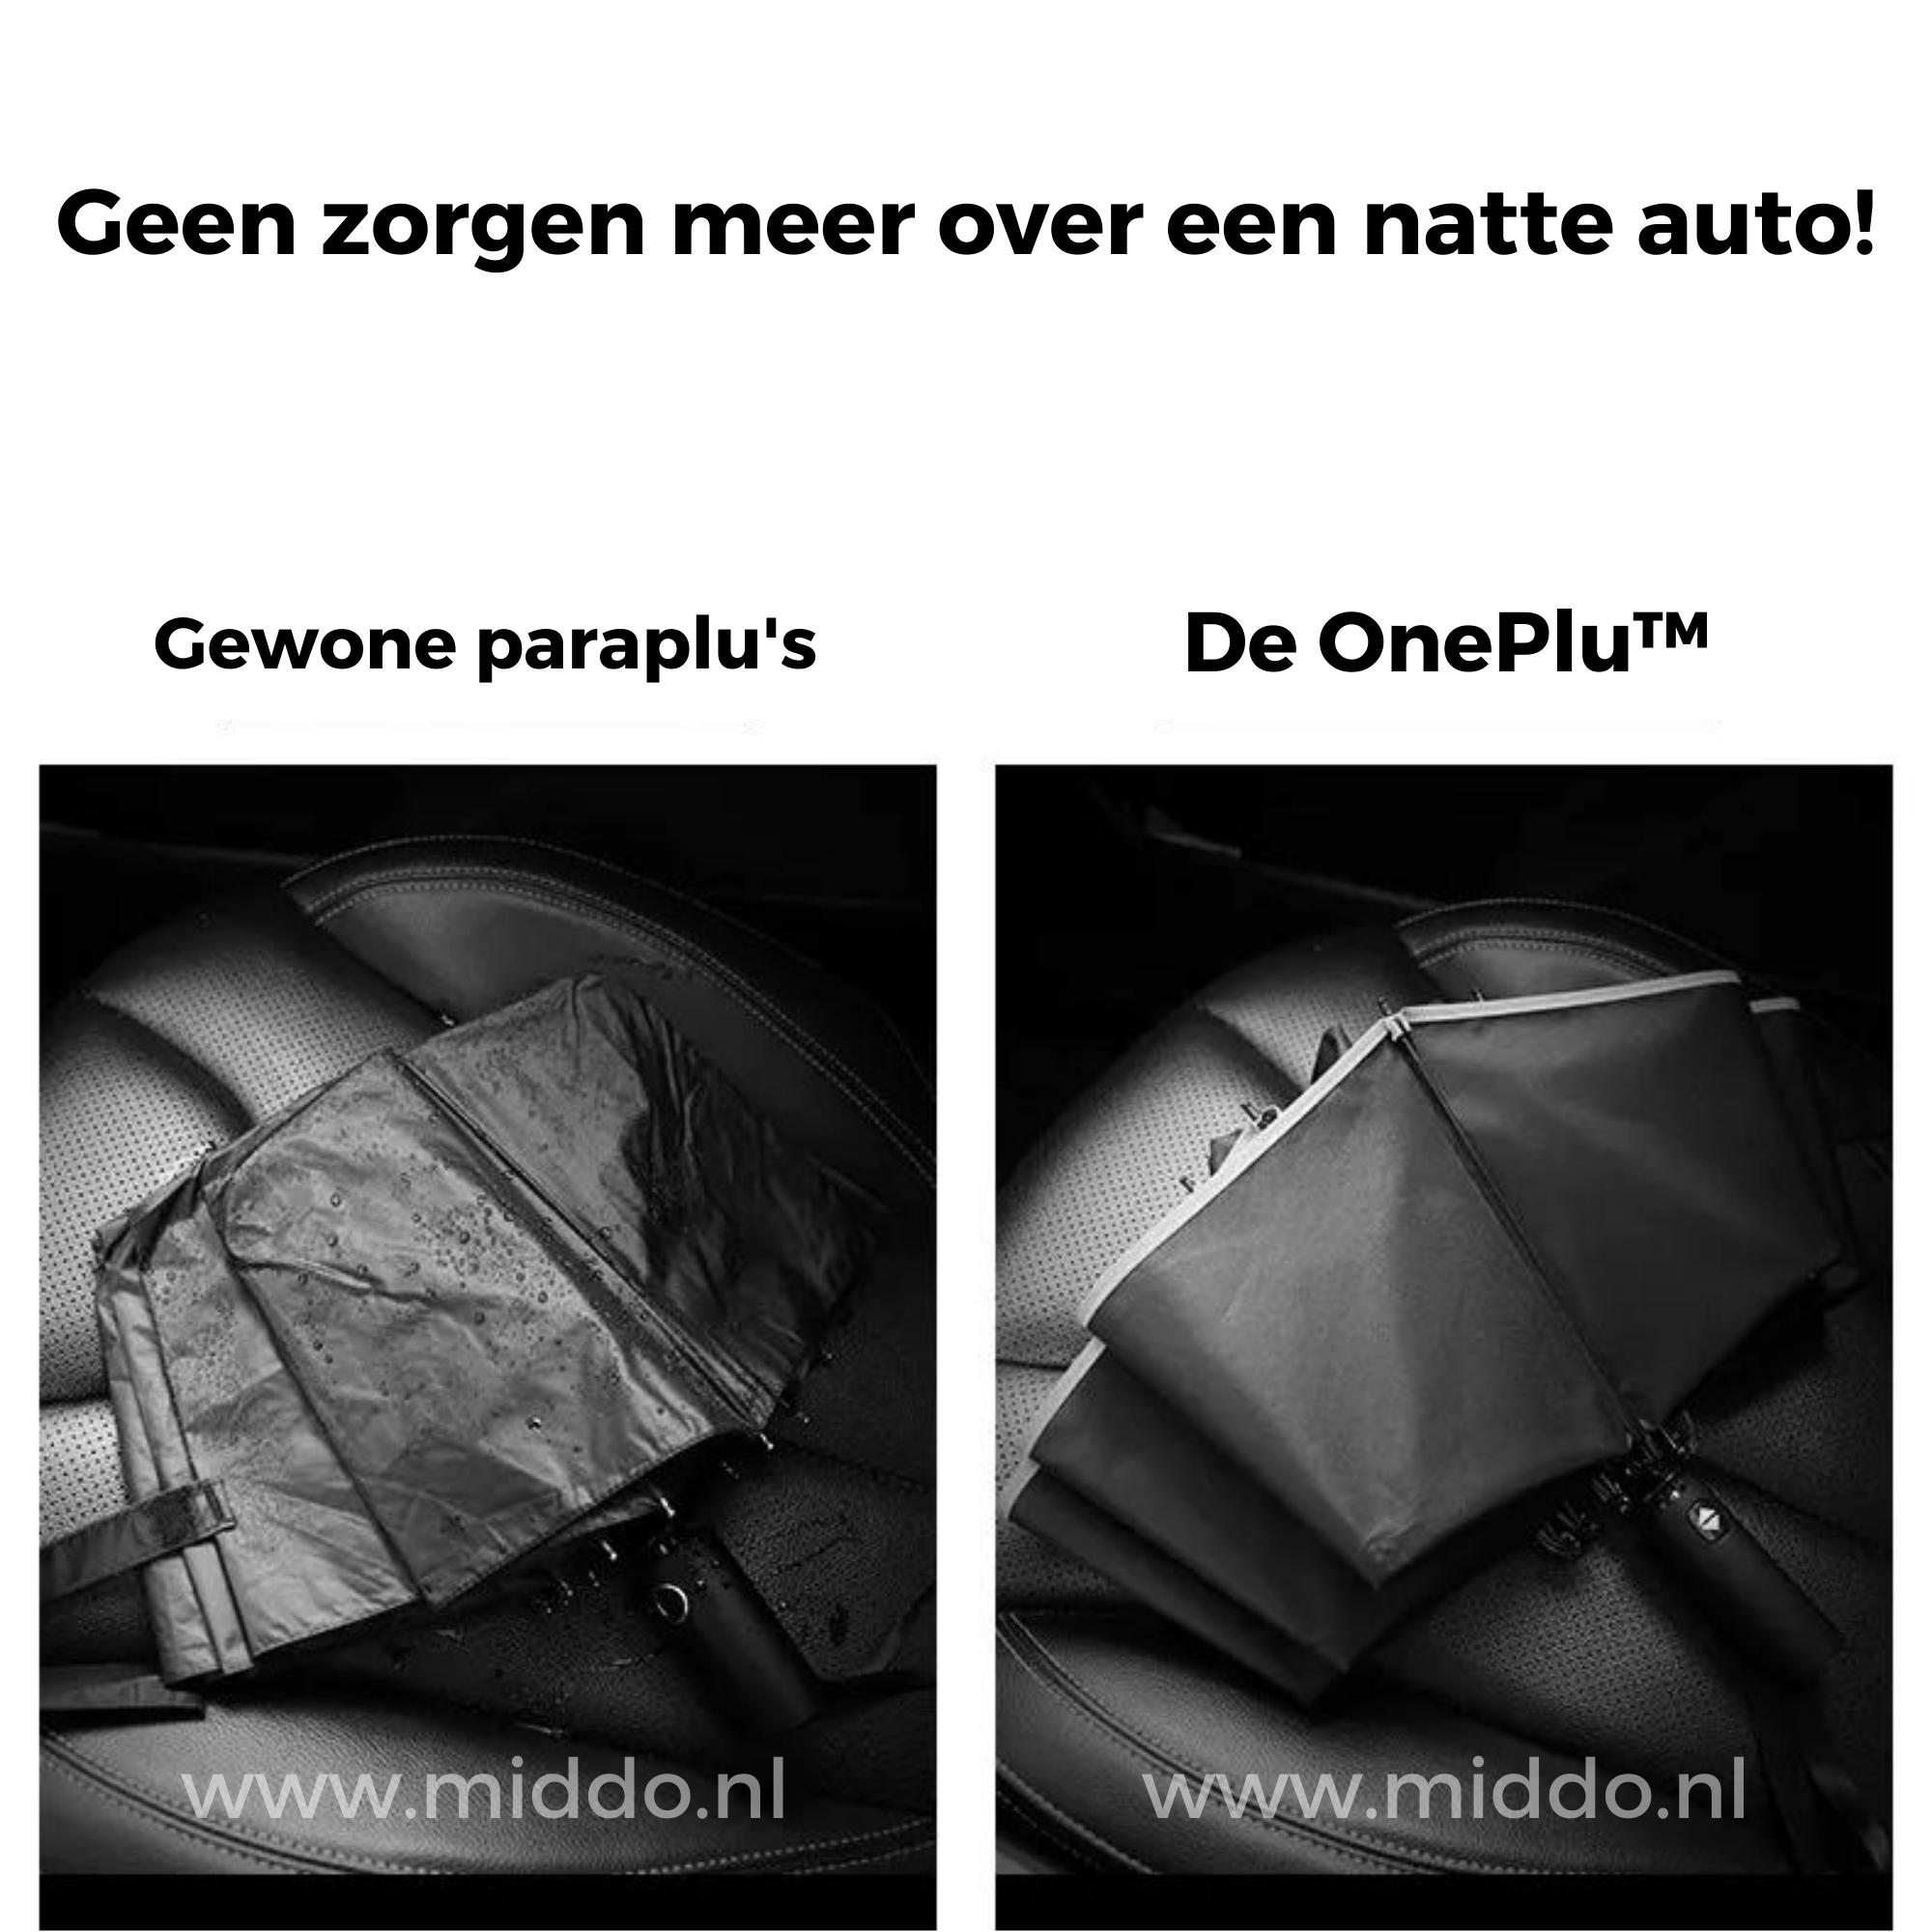 Vergelijking van gewone paraplu en OnePlu paraplu zonder natte auto-interieur